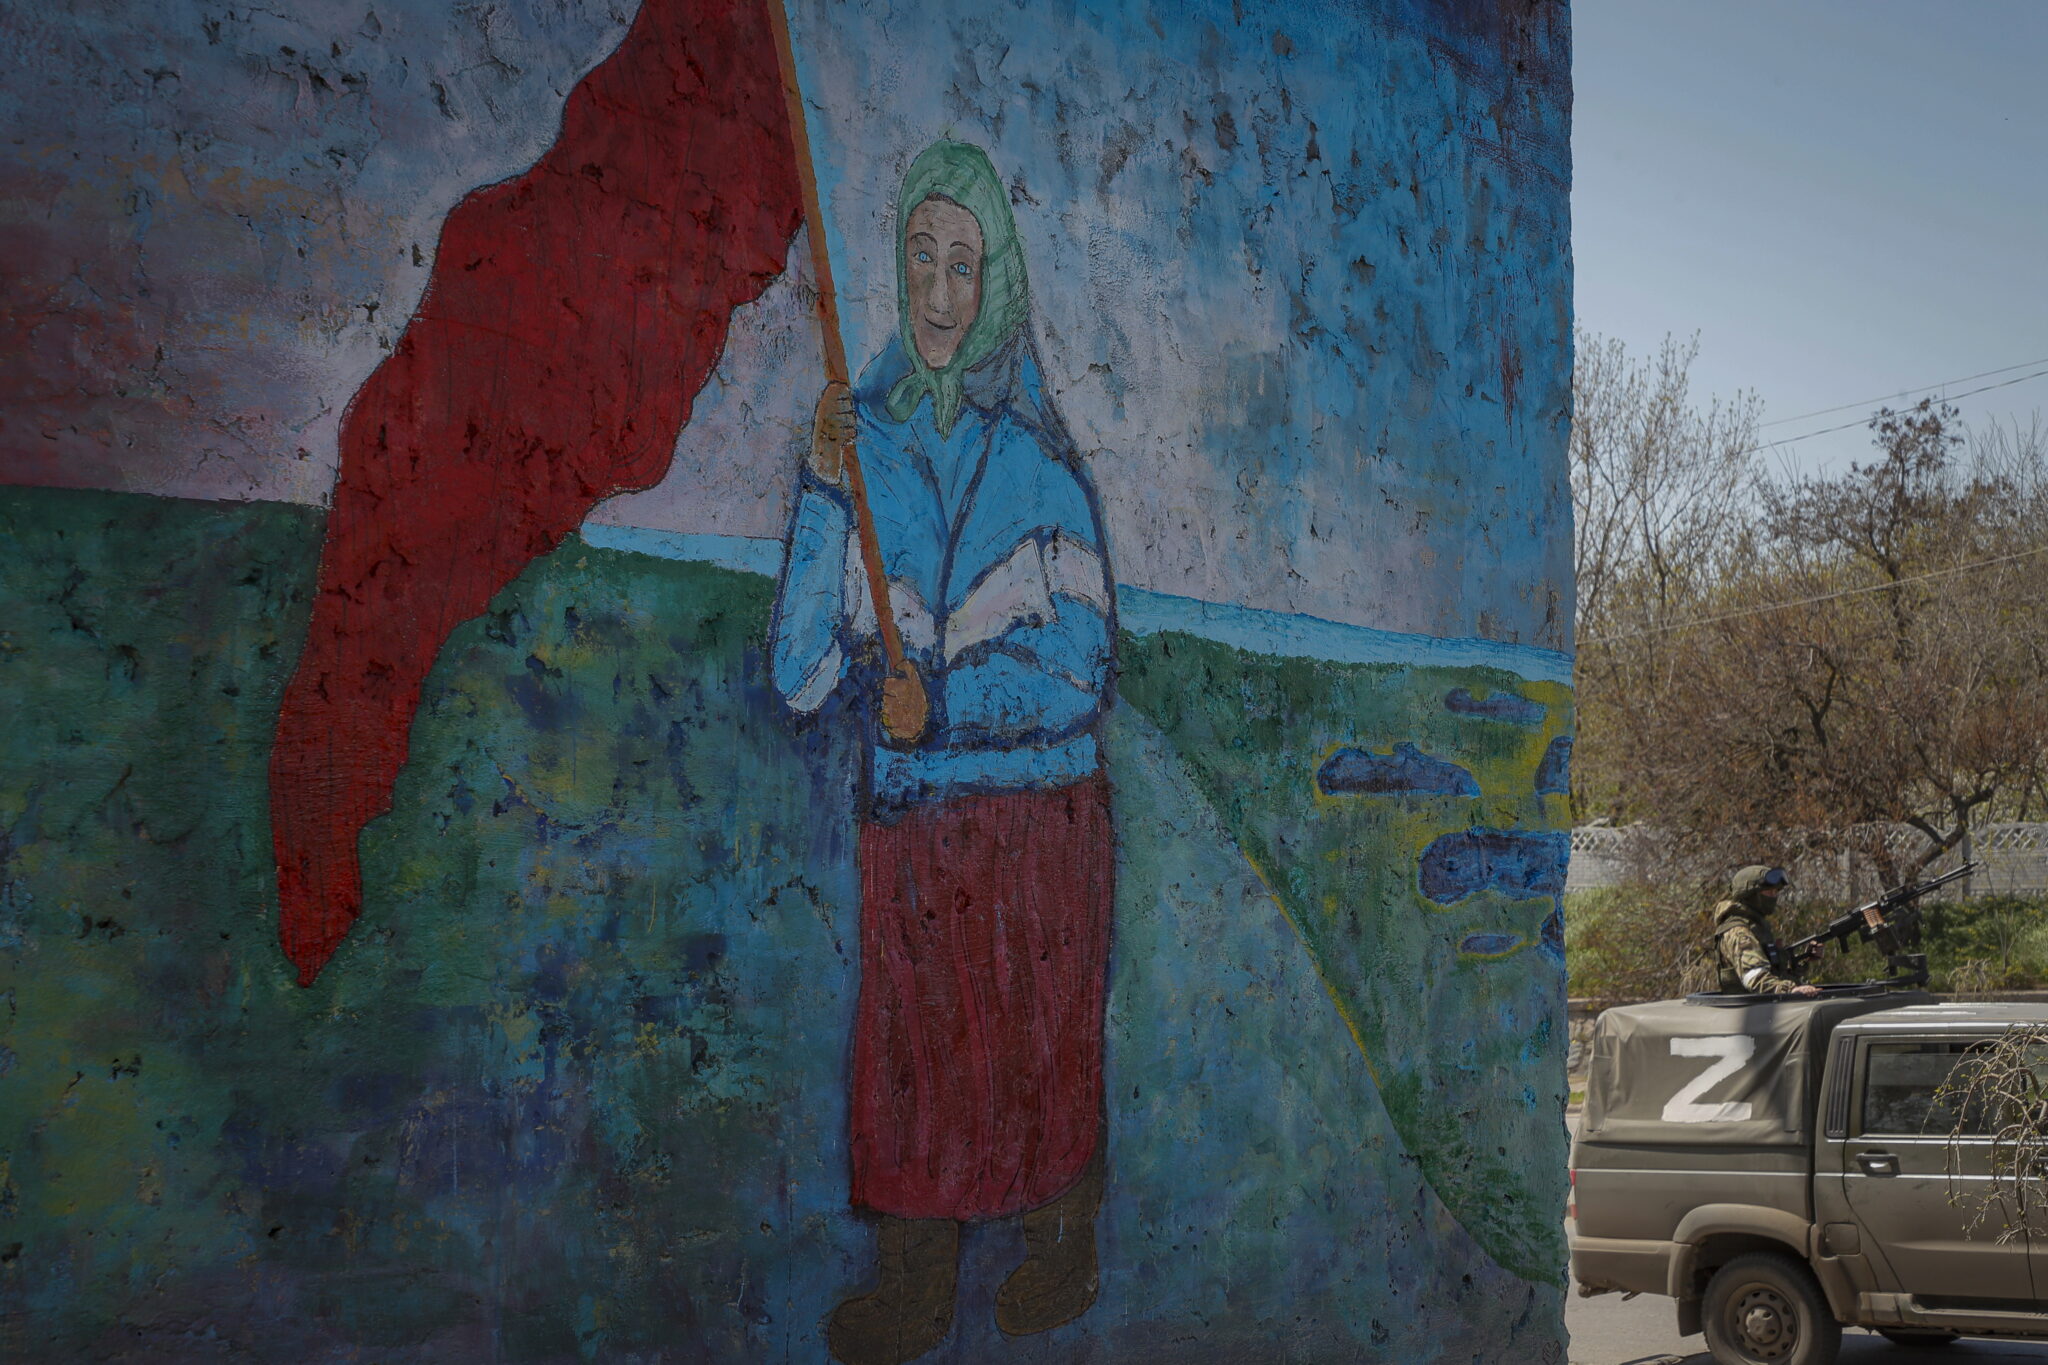 Одно из многочисленных и зображений Бабушки с Флагом СССР. Бердянск, Украина, 30 апреля 2022. EPA/SERGEI ILNITSKY/Scanpix/LETA